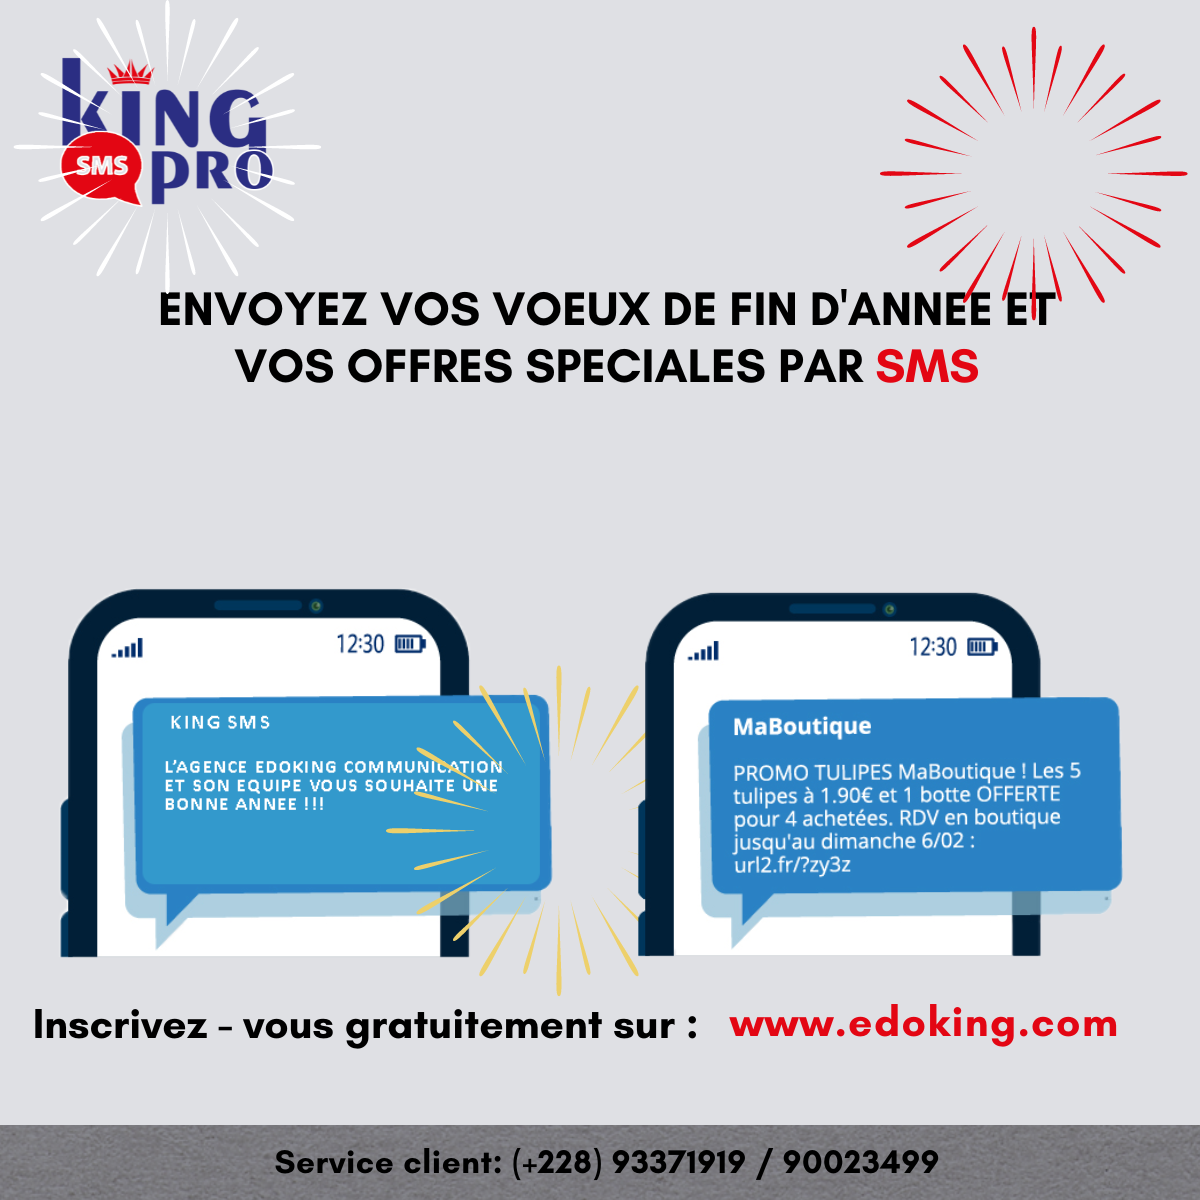 KING SMS PRO : Envoi des SMS Marketing Pour réussir votre campagne SMS, la plateforme d